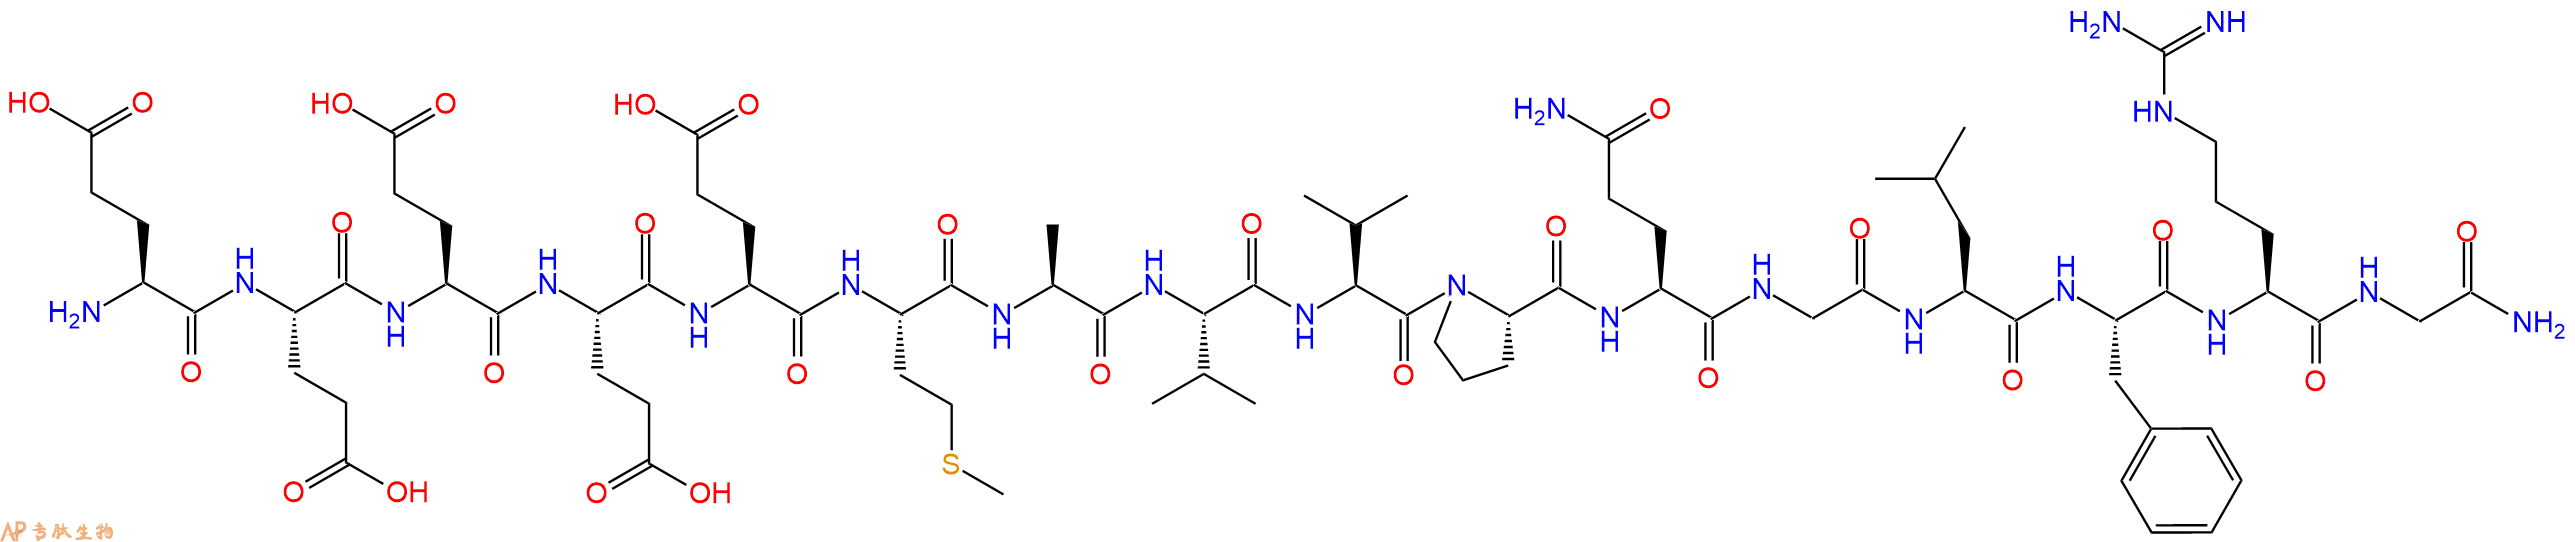 专肽生物产品Pancreastatin(37-52), human133605-57-9